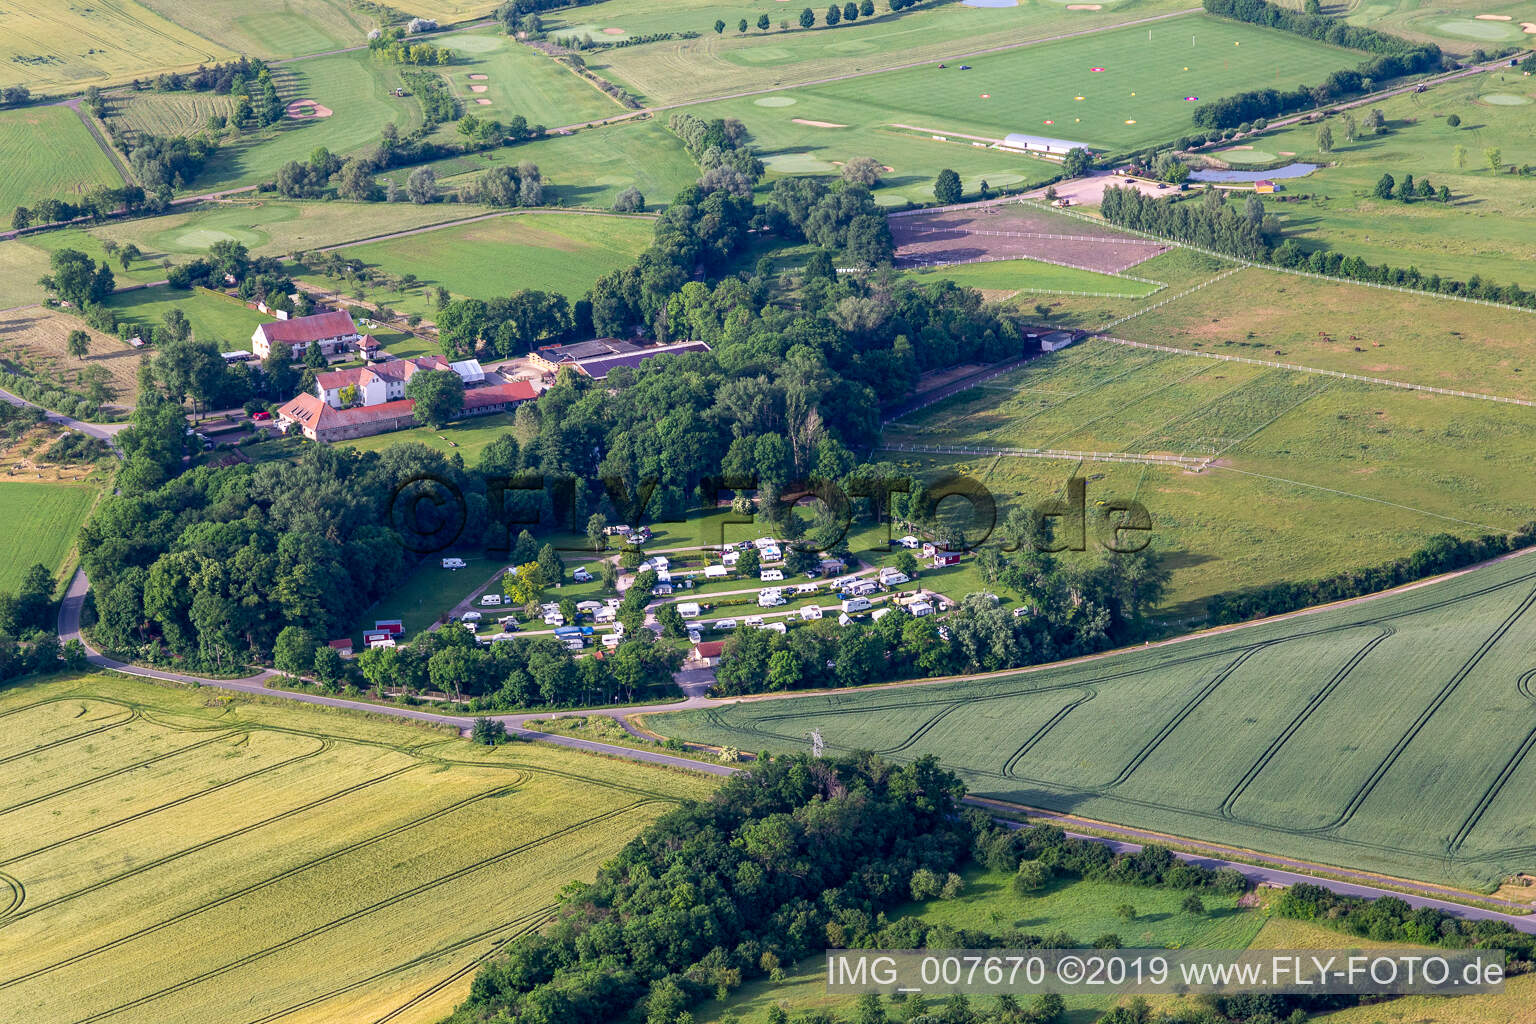 Vue aérienne de Camping Brelan à Mühlberg dans le département Thuringe, Allemagne